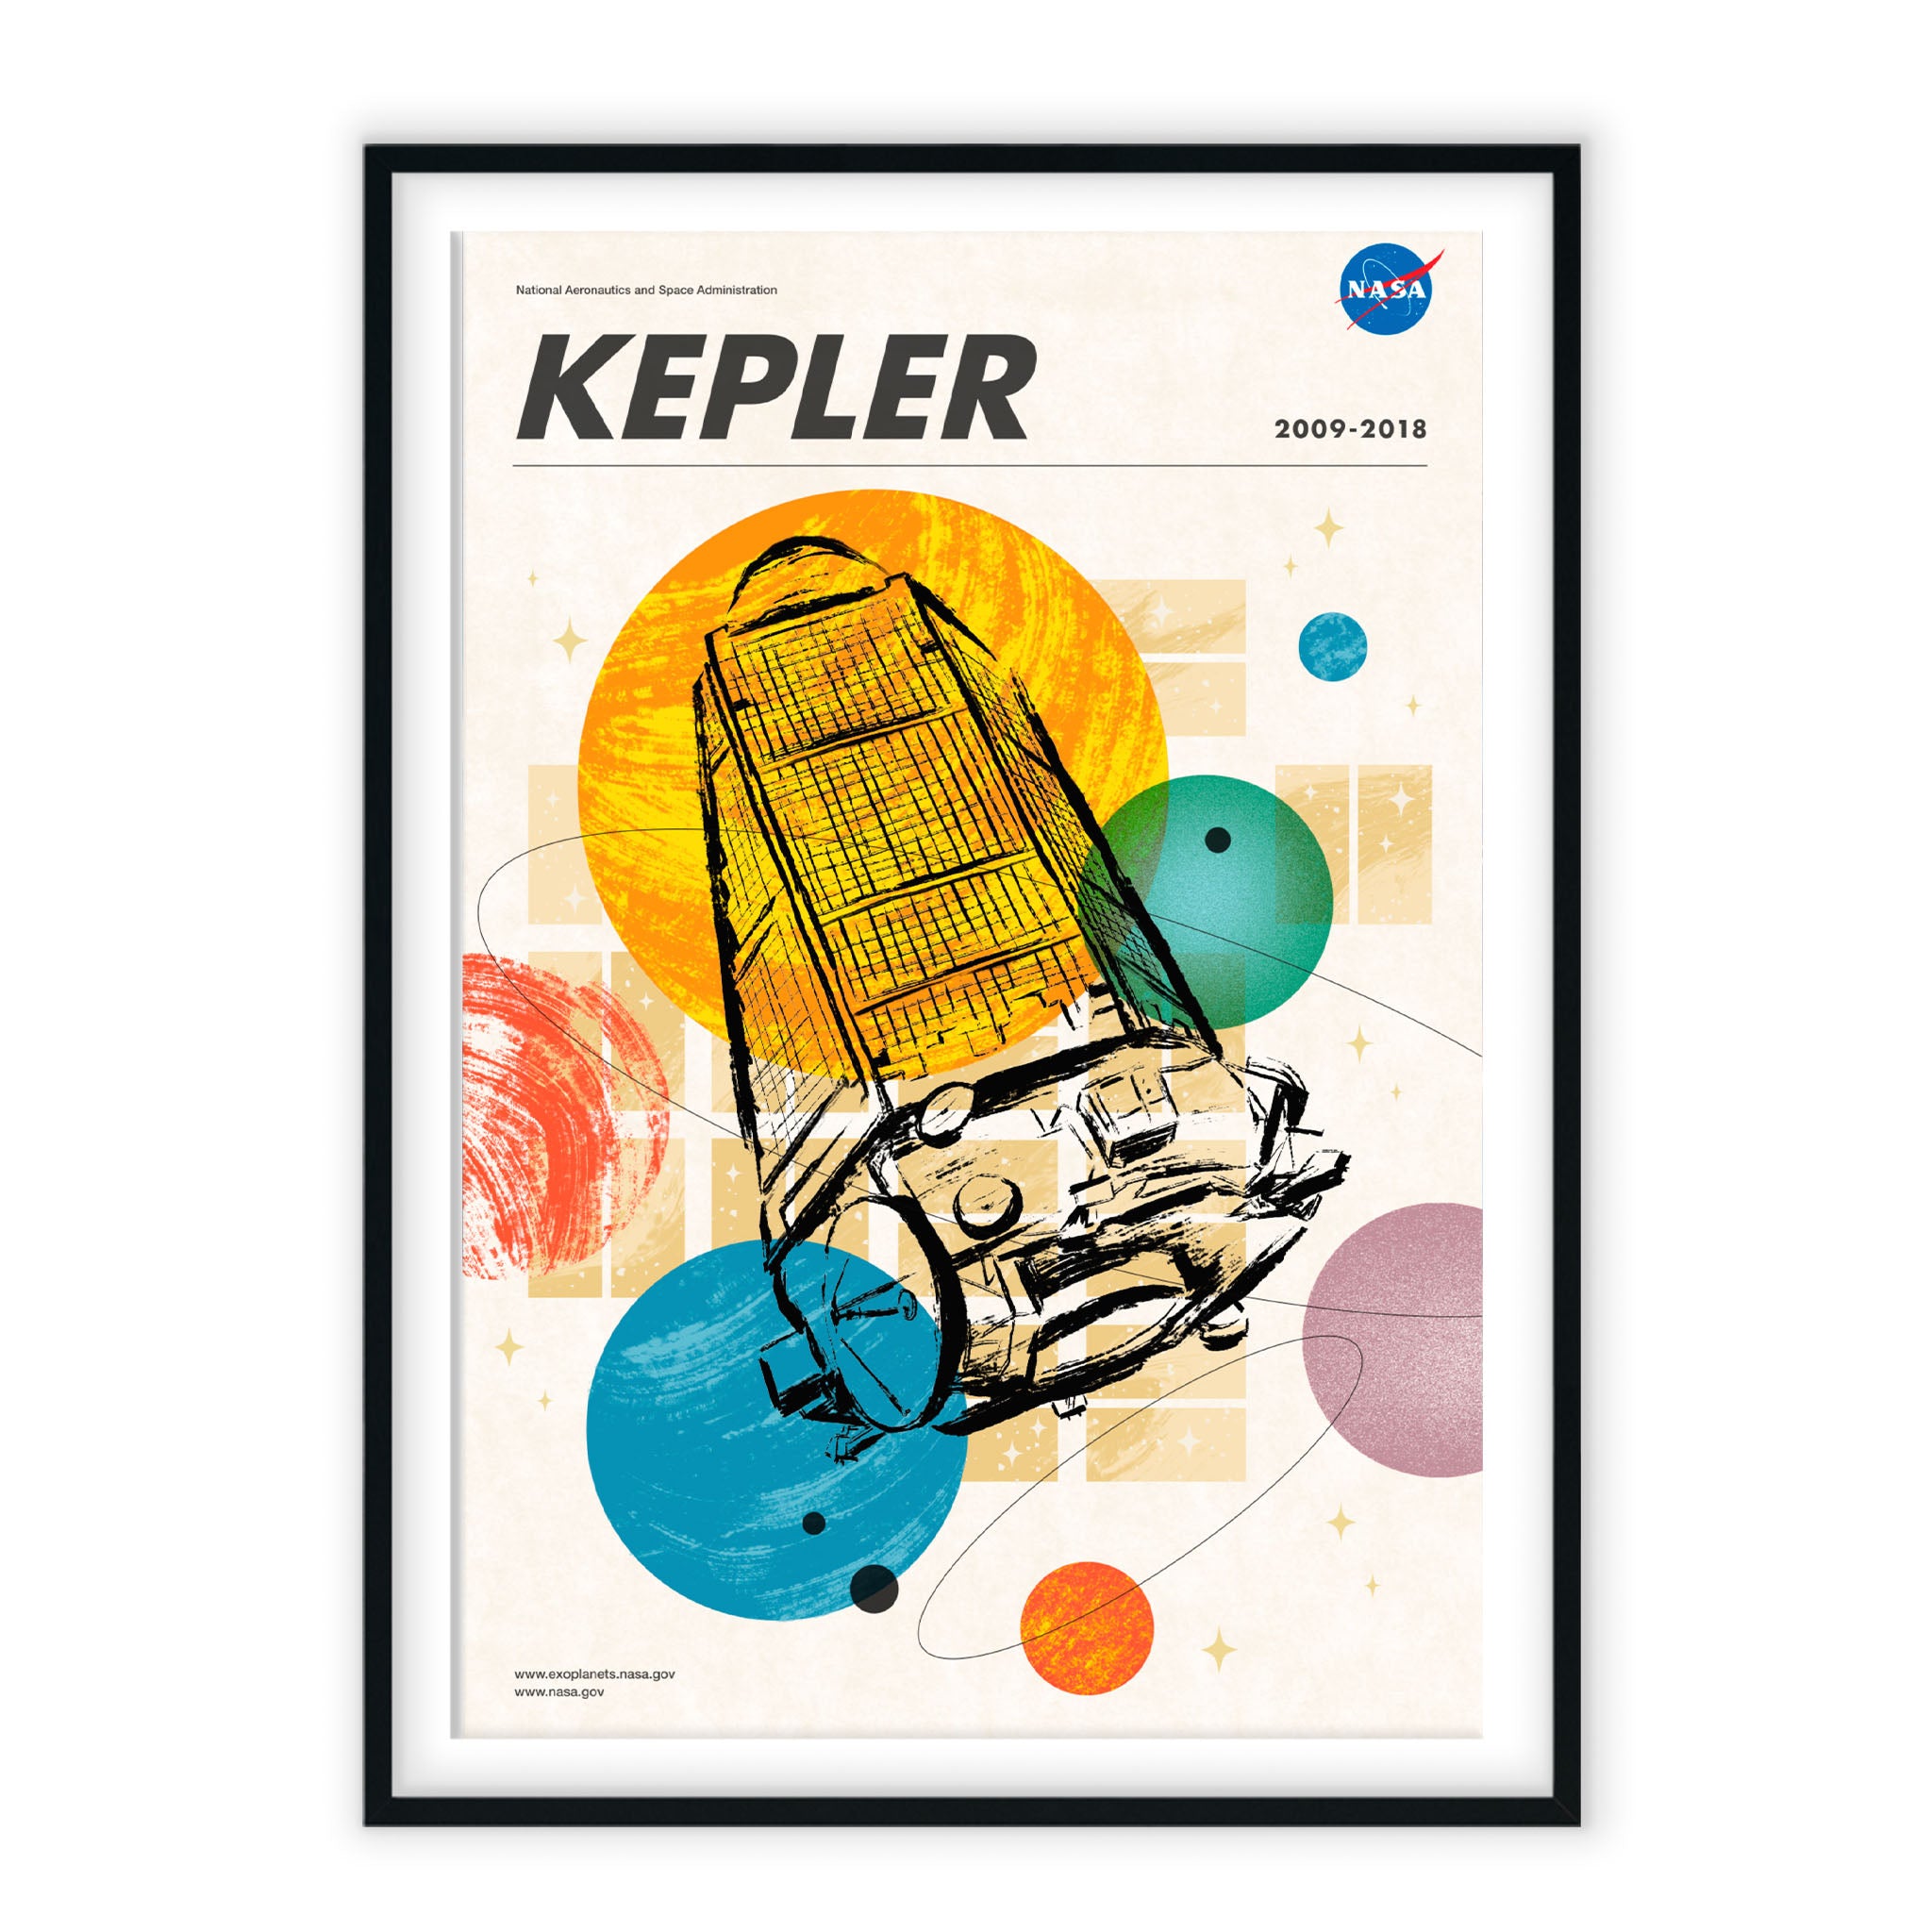 Kepler - Visions of the Future NASA